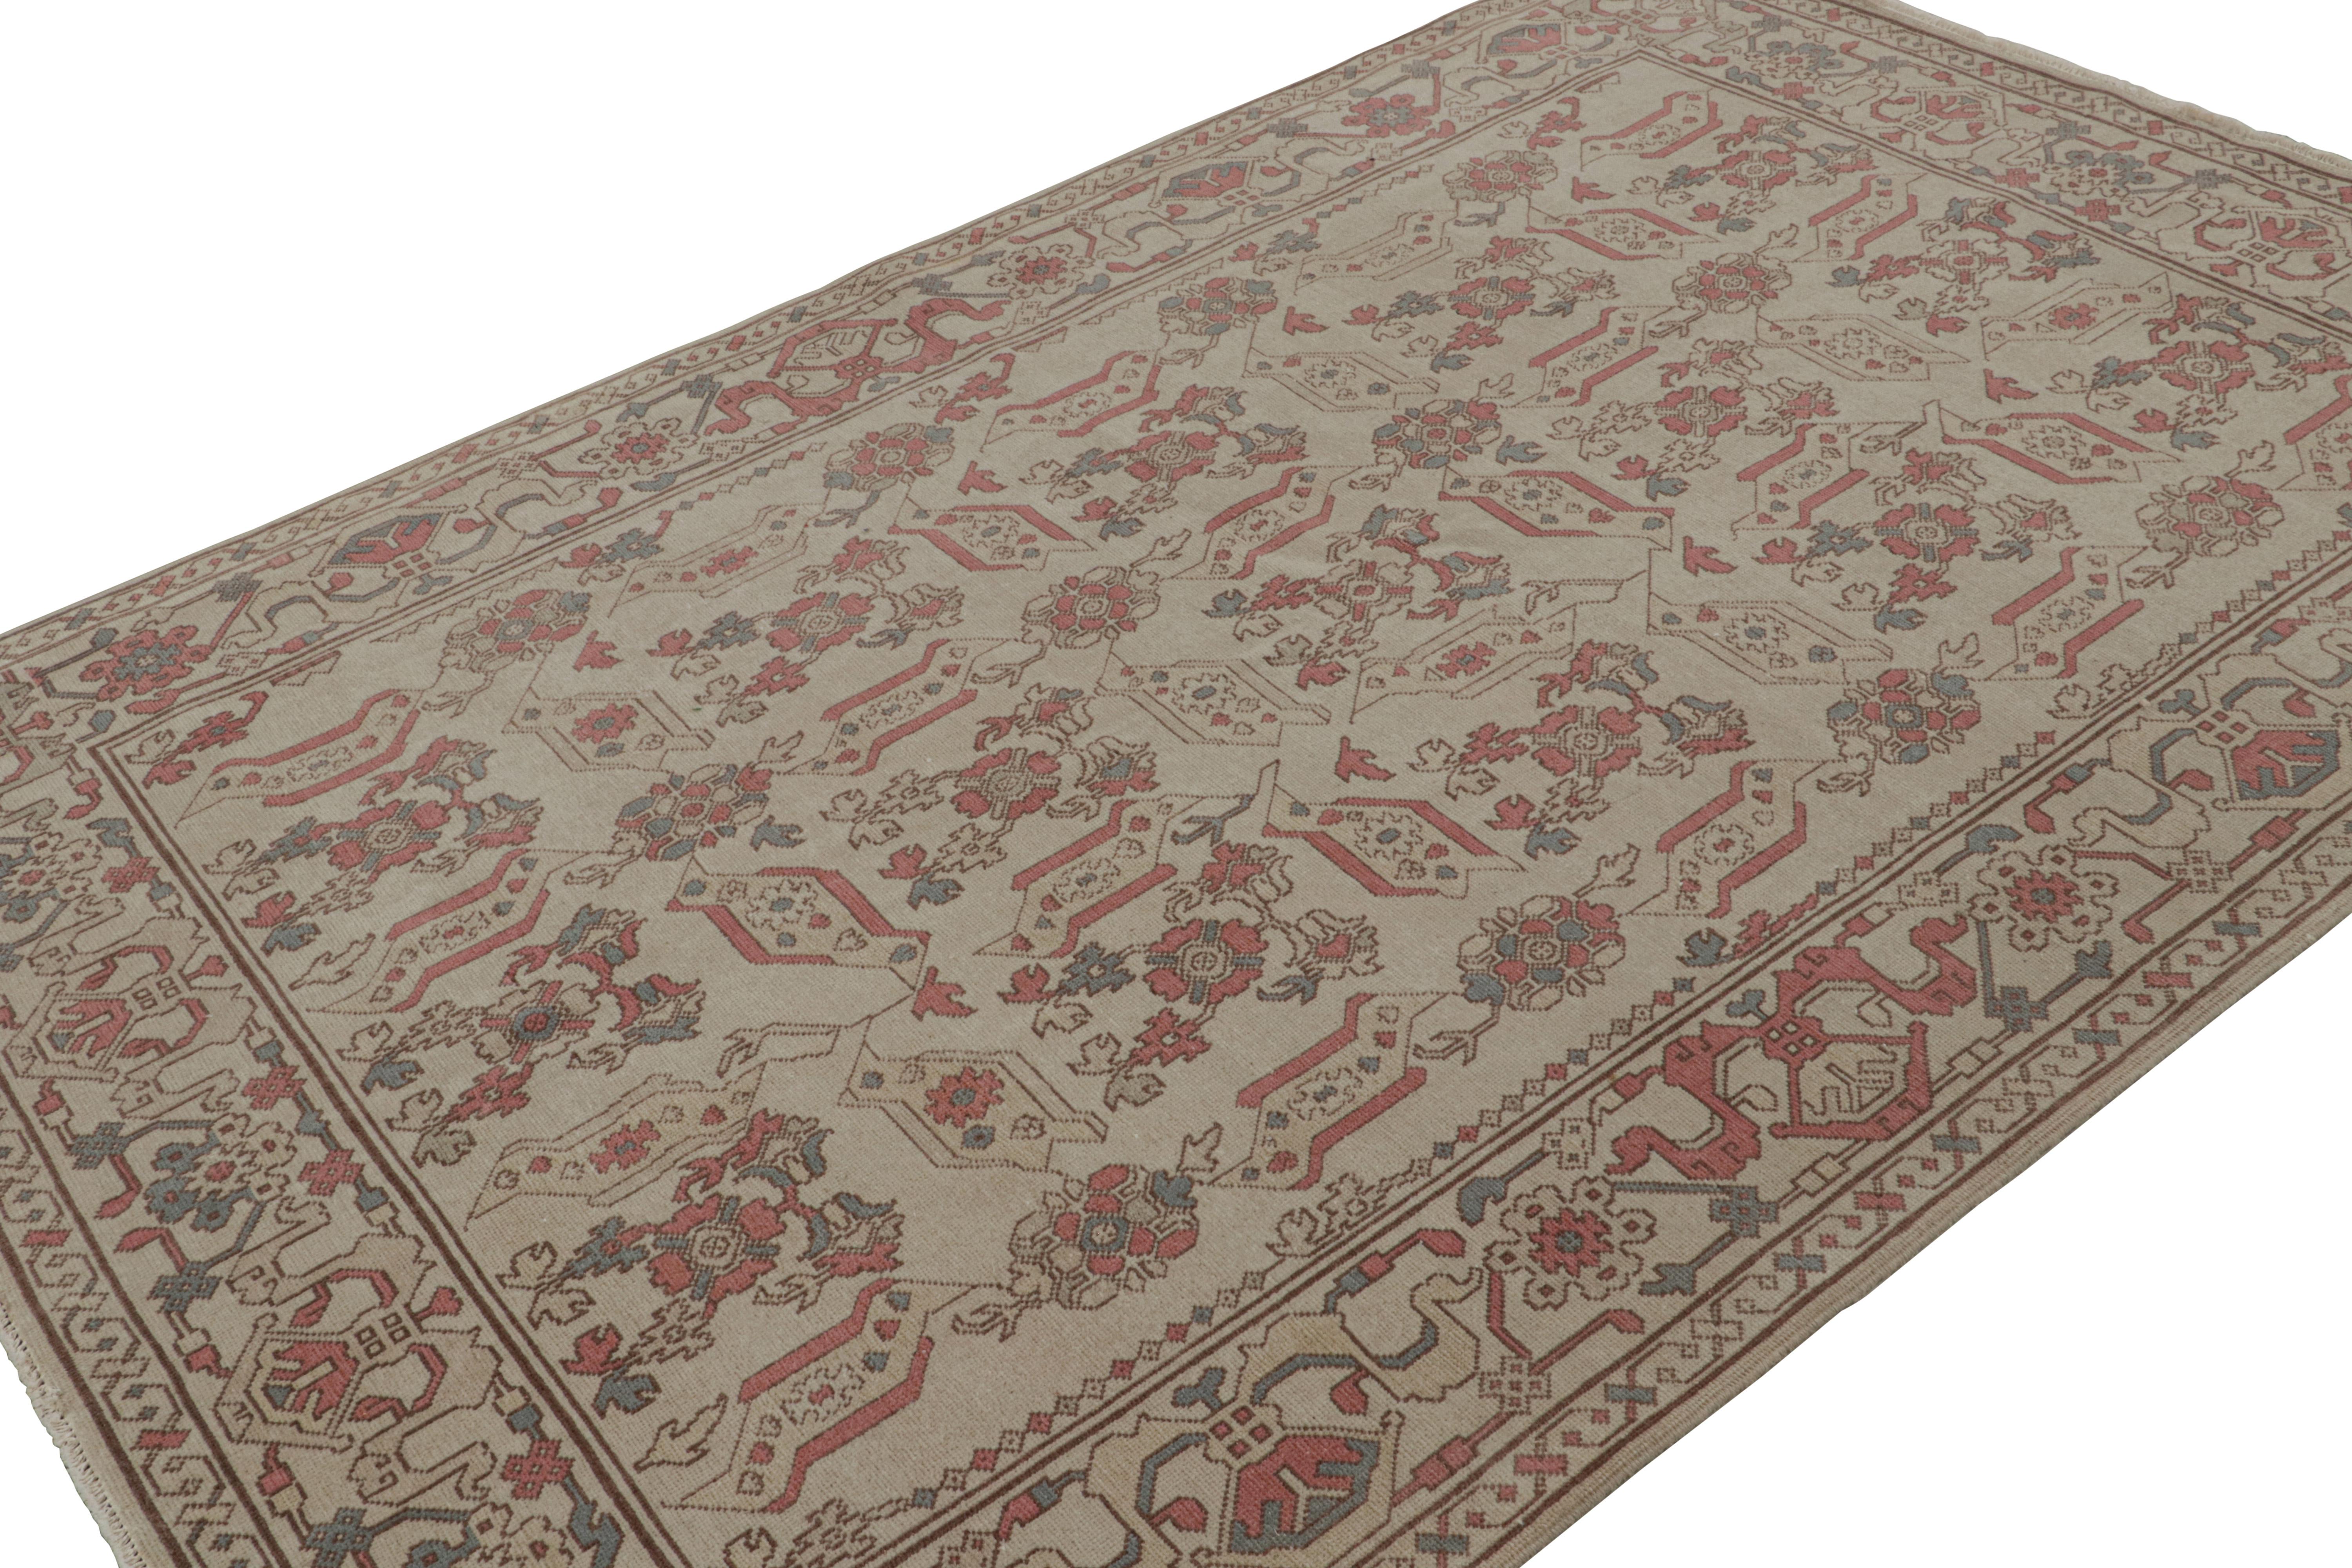 Dieser aus Wolle handgeknüpfte rumänische Teppich im Format 5x8 weist ein Design auf, das von der europäischen Sensibilität des 17. Jahrhunderts inspiriert ist, jedoch in so einzigartigen, subversiven Farben wiedergegeben wird, dass er einen hohen